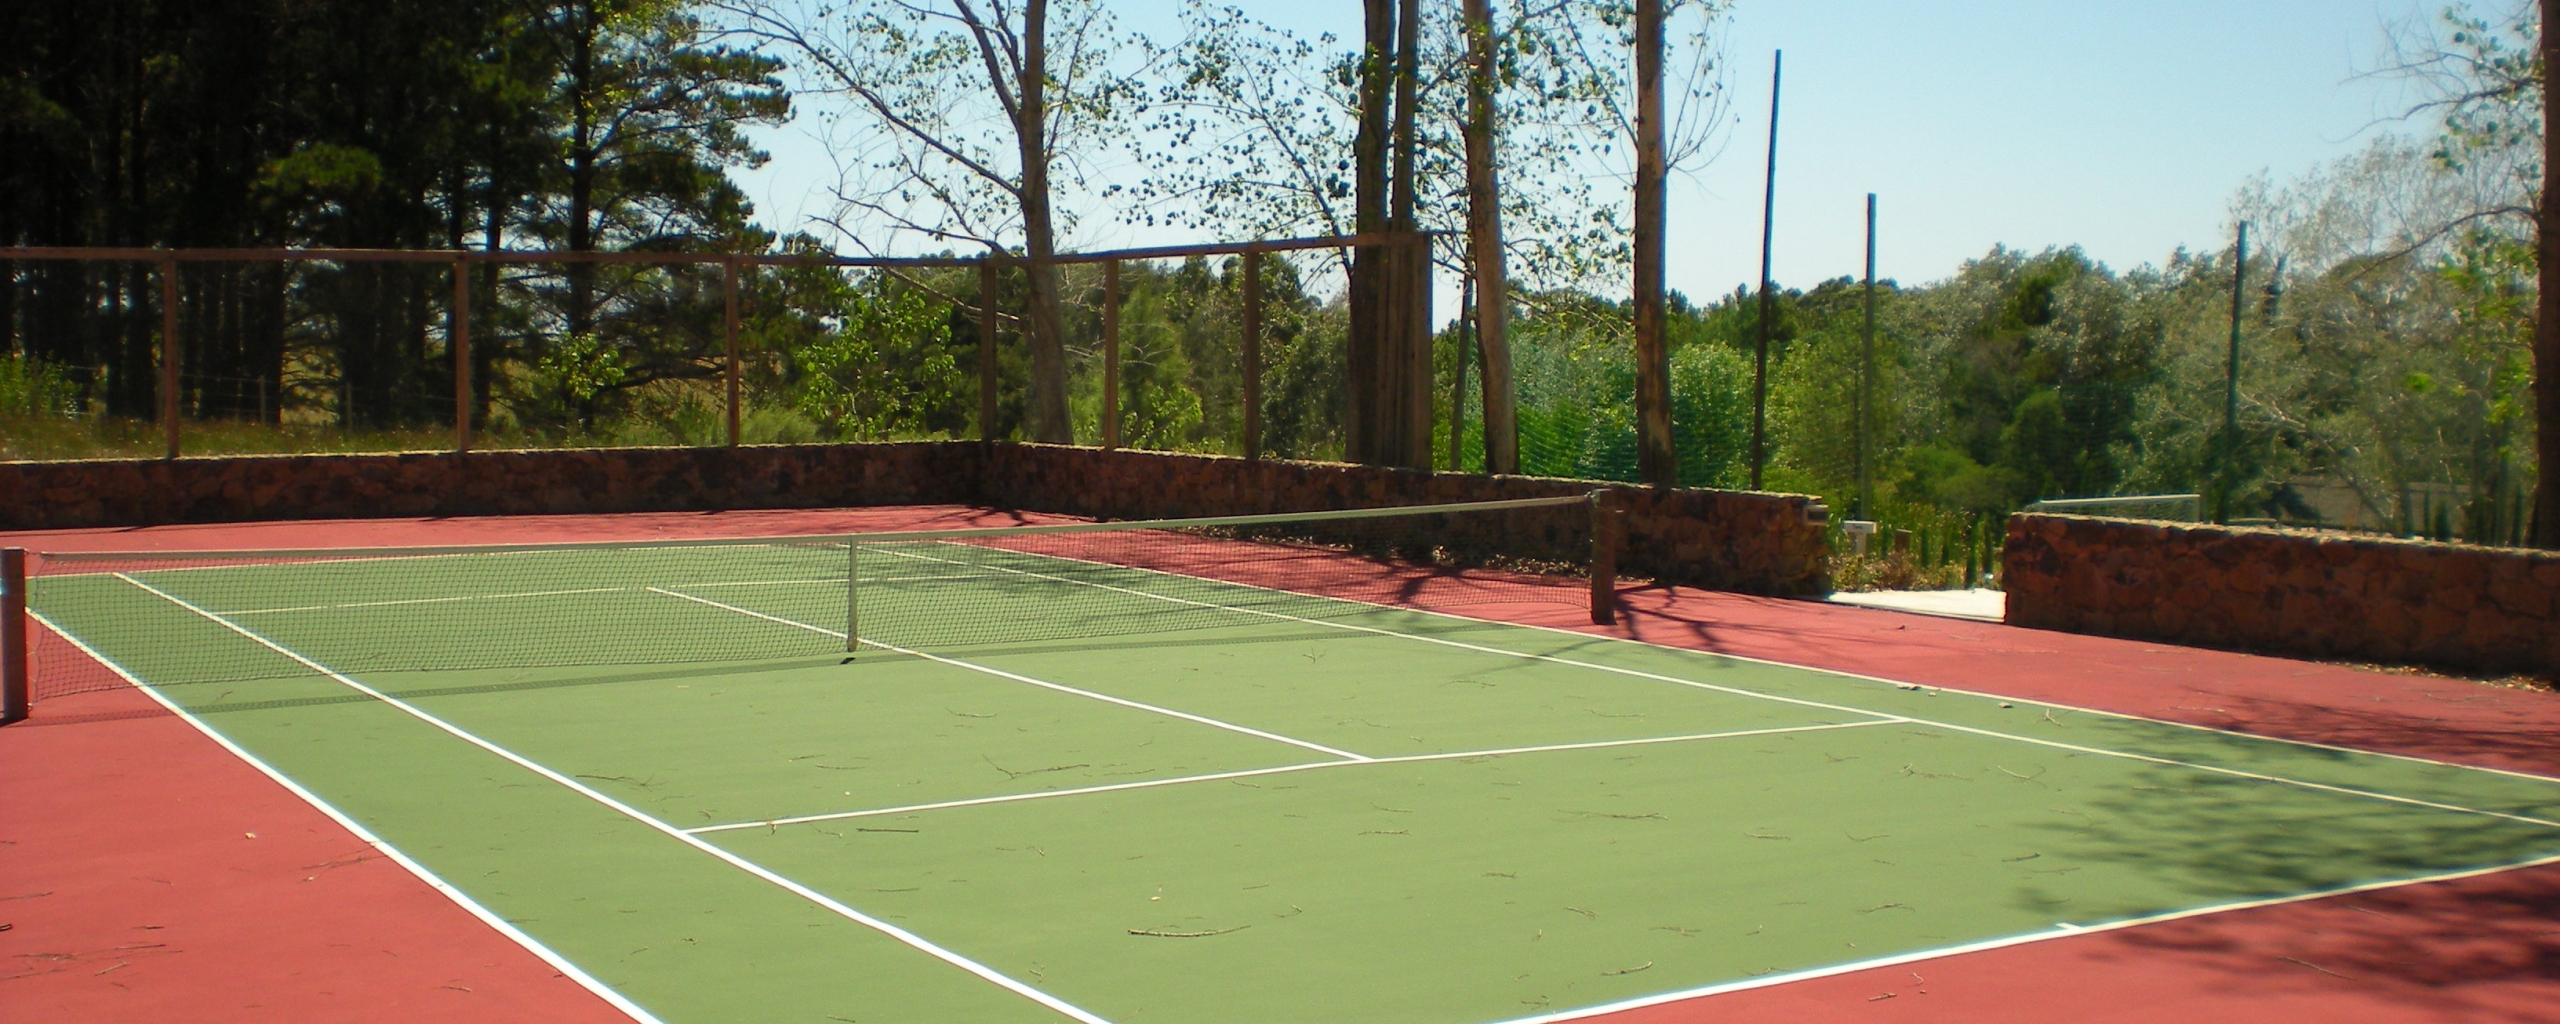 Tenis | Cancha | Jugar |  en Uruguay